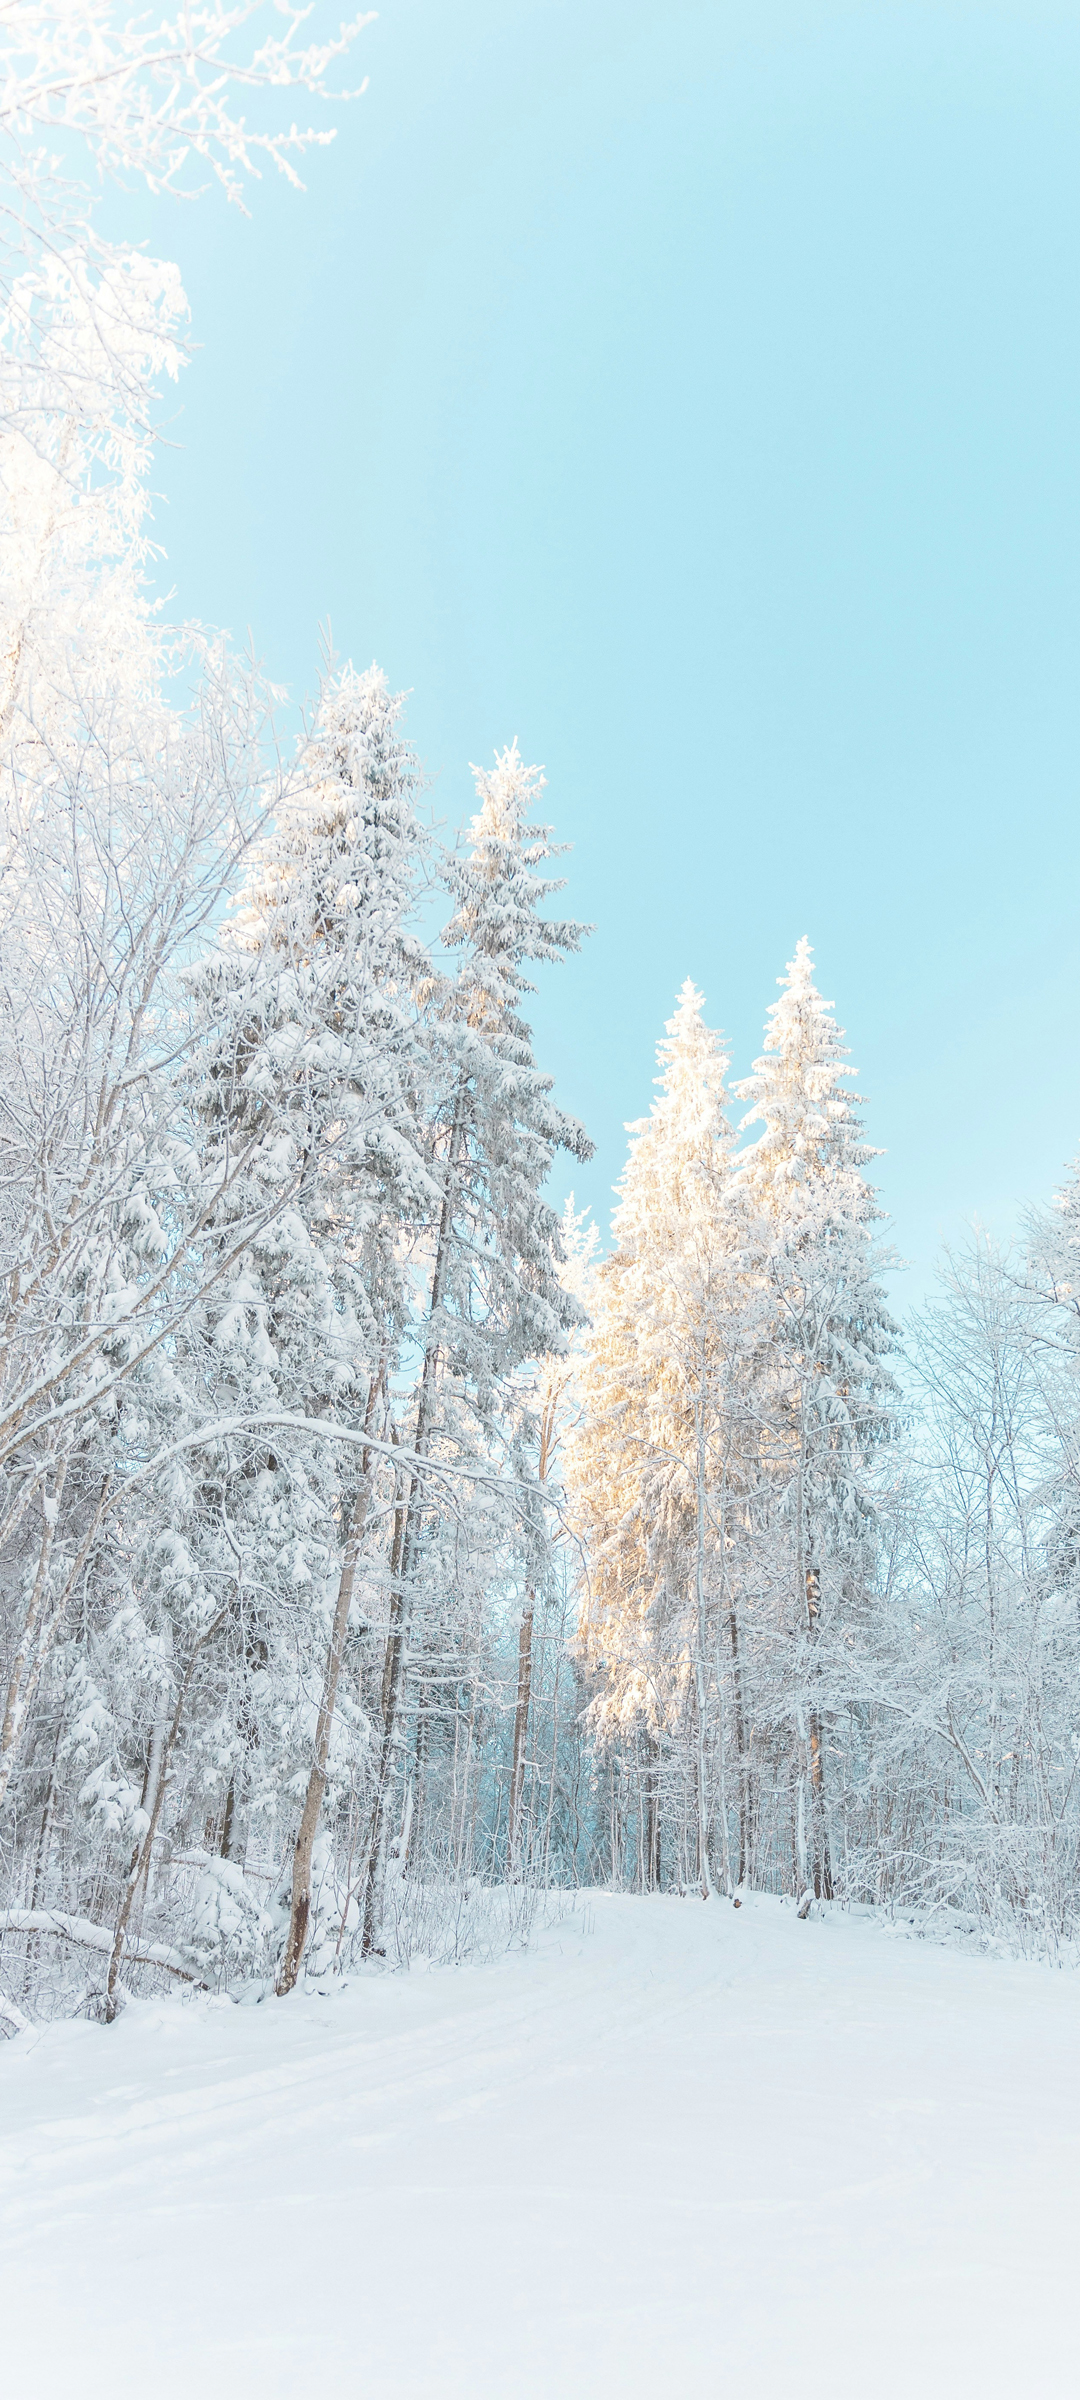 雪景树林风景高清手机壁纸